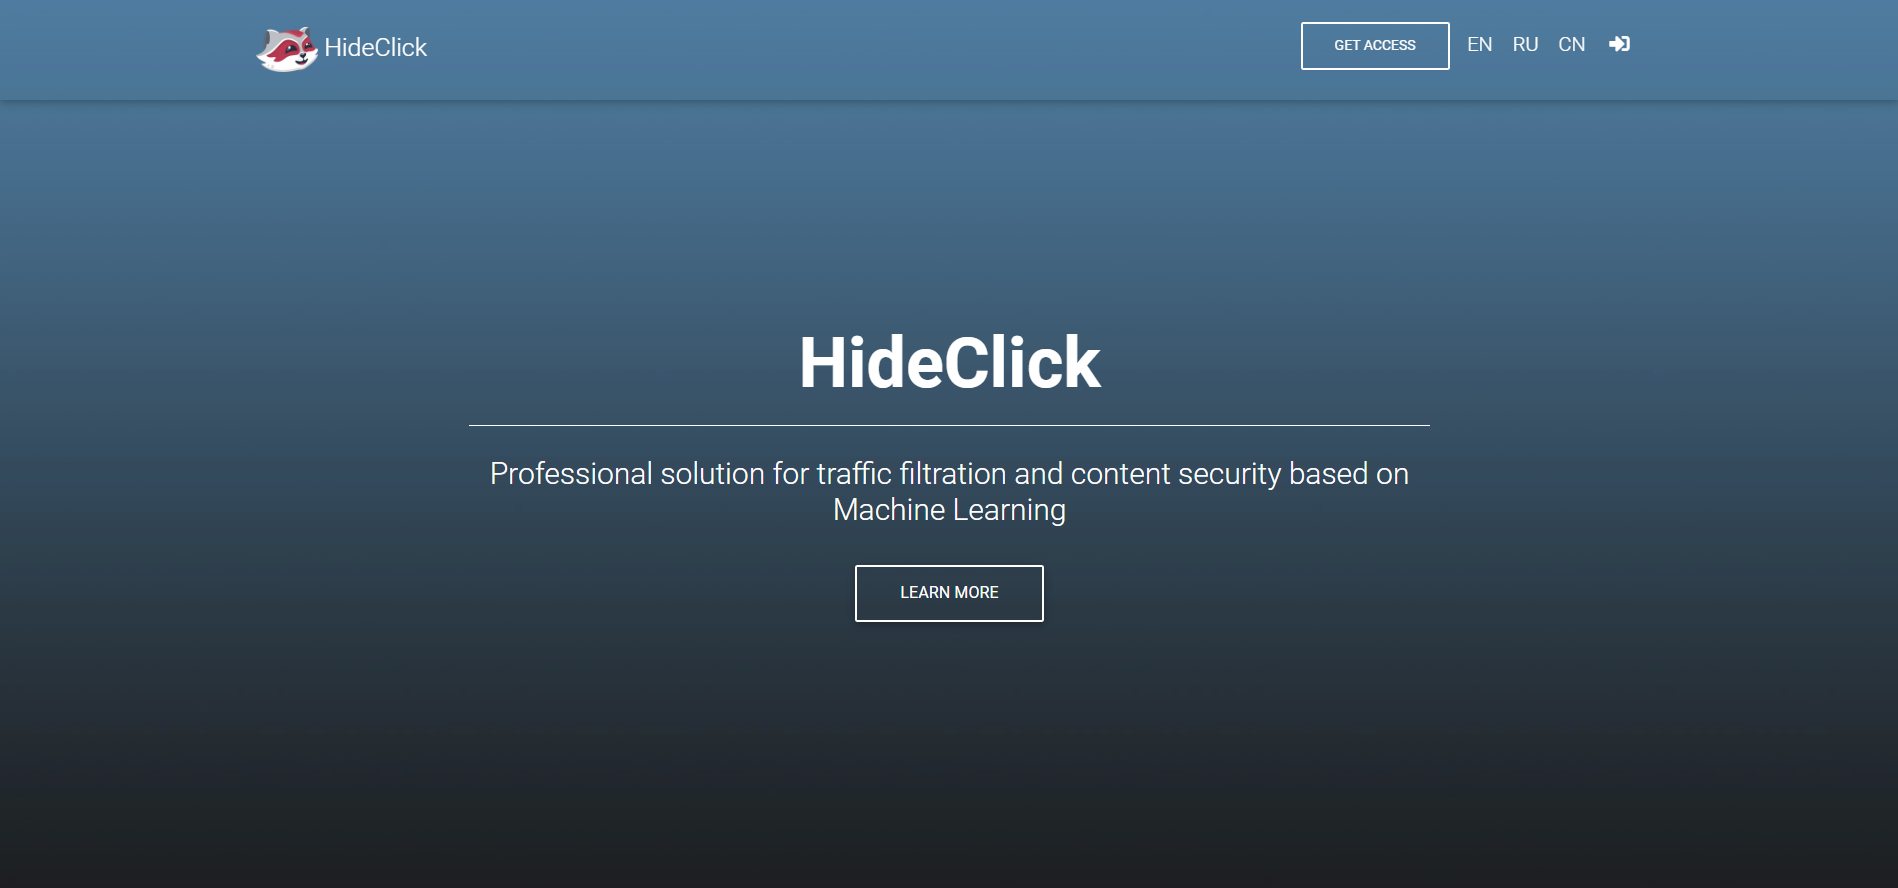 Hide.Click